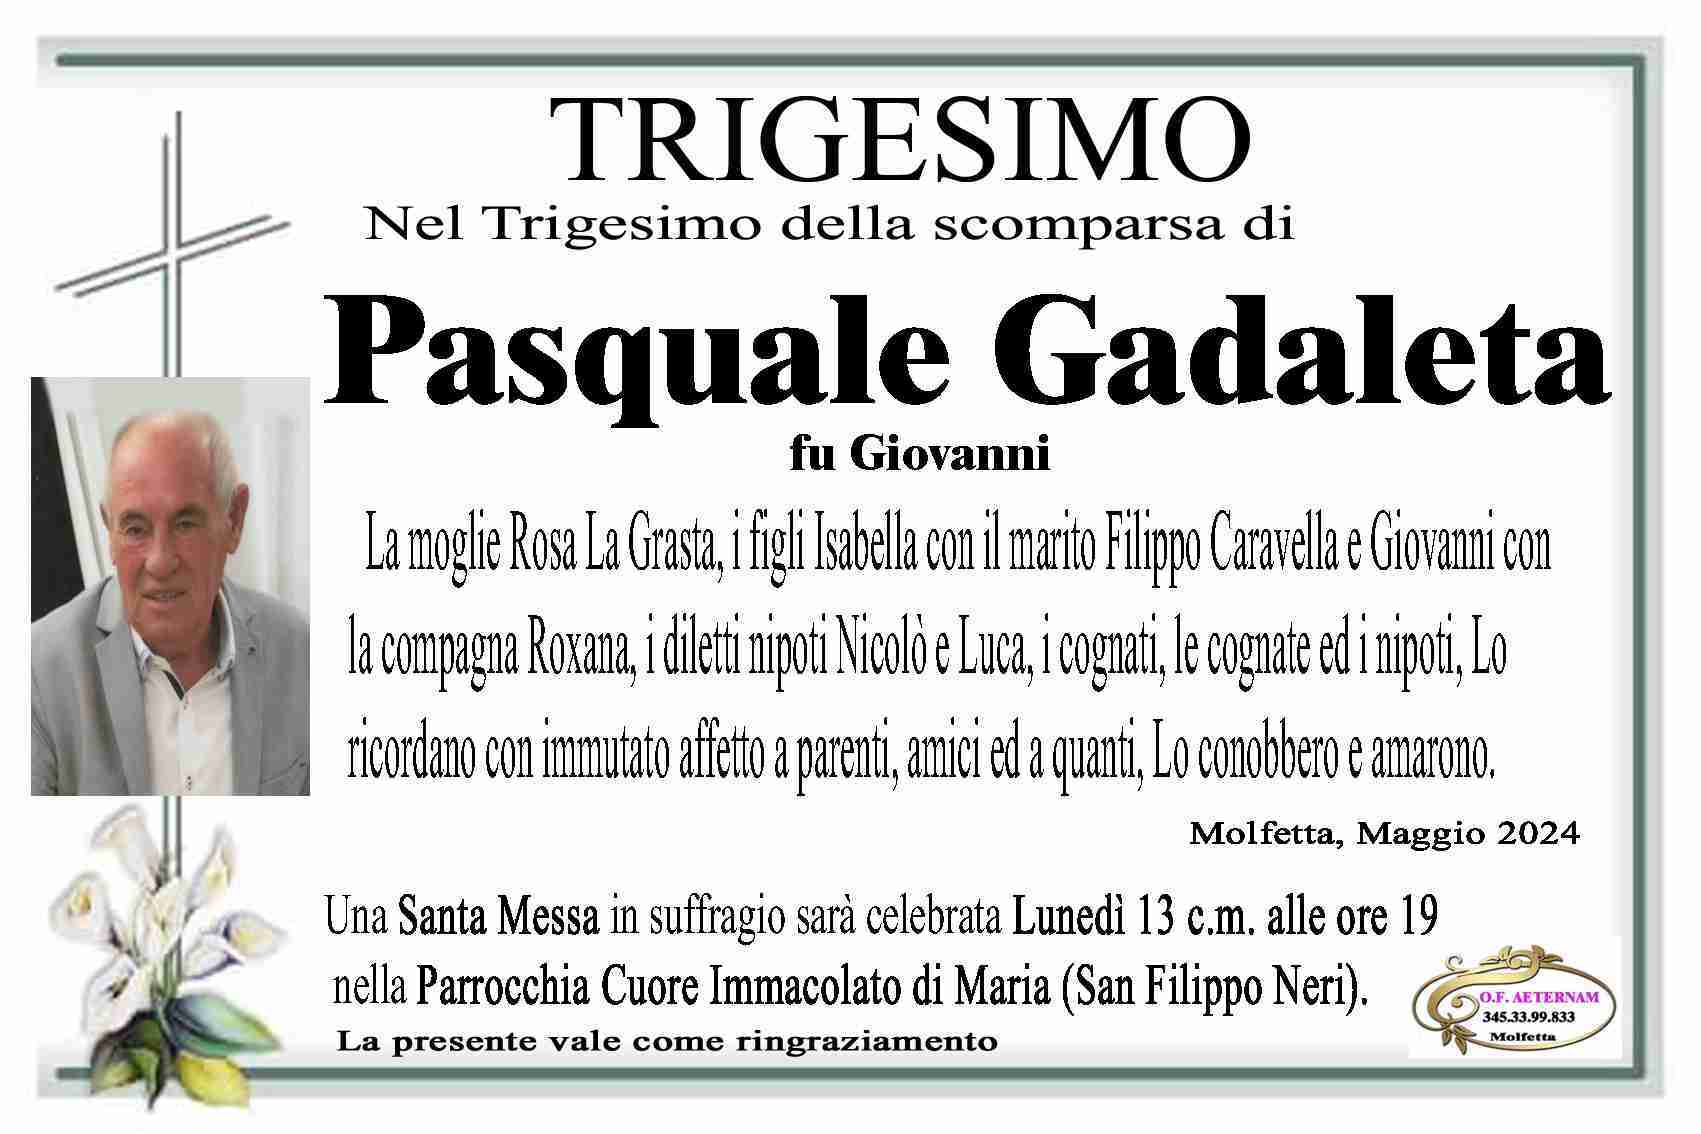 Pasquale Gadaleta